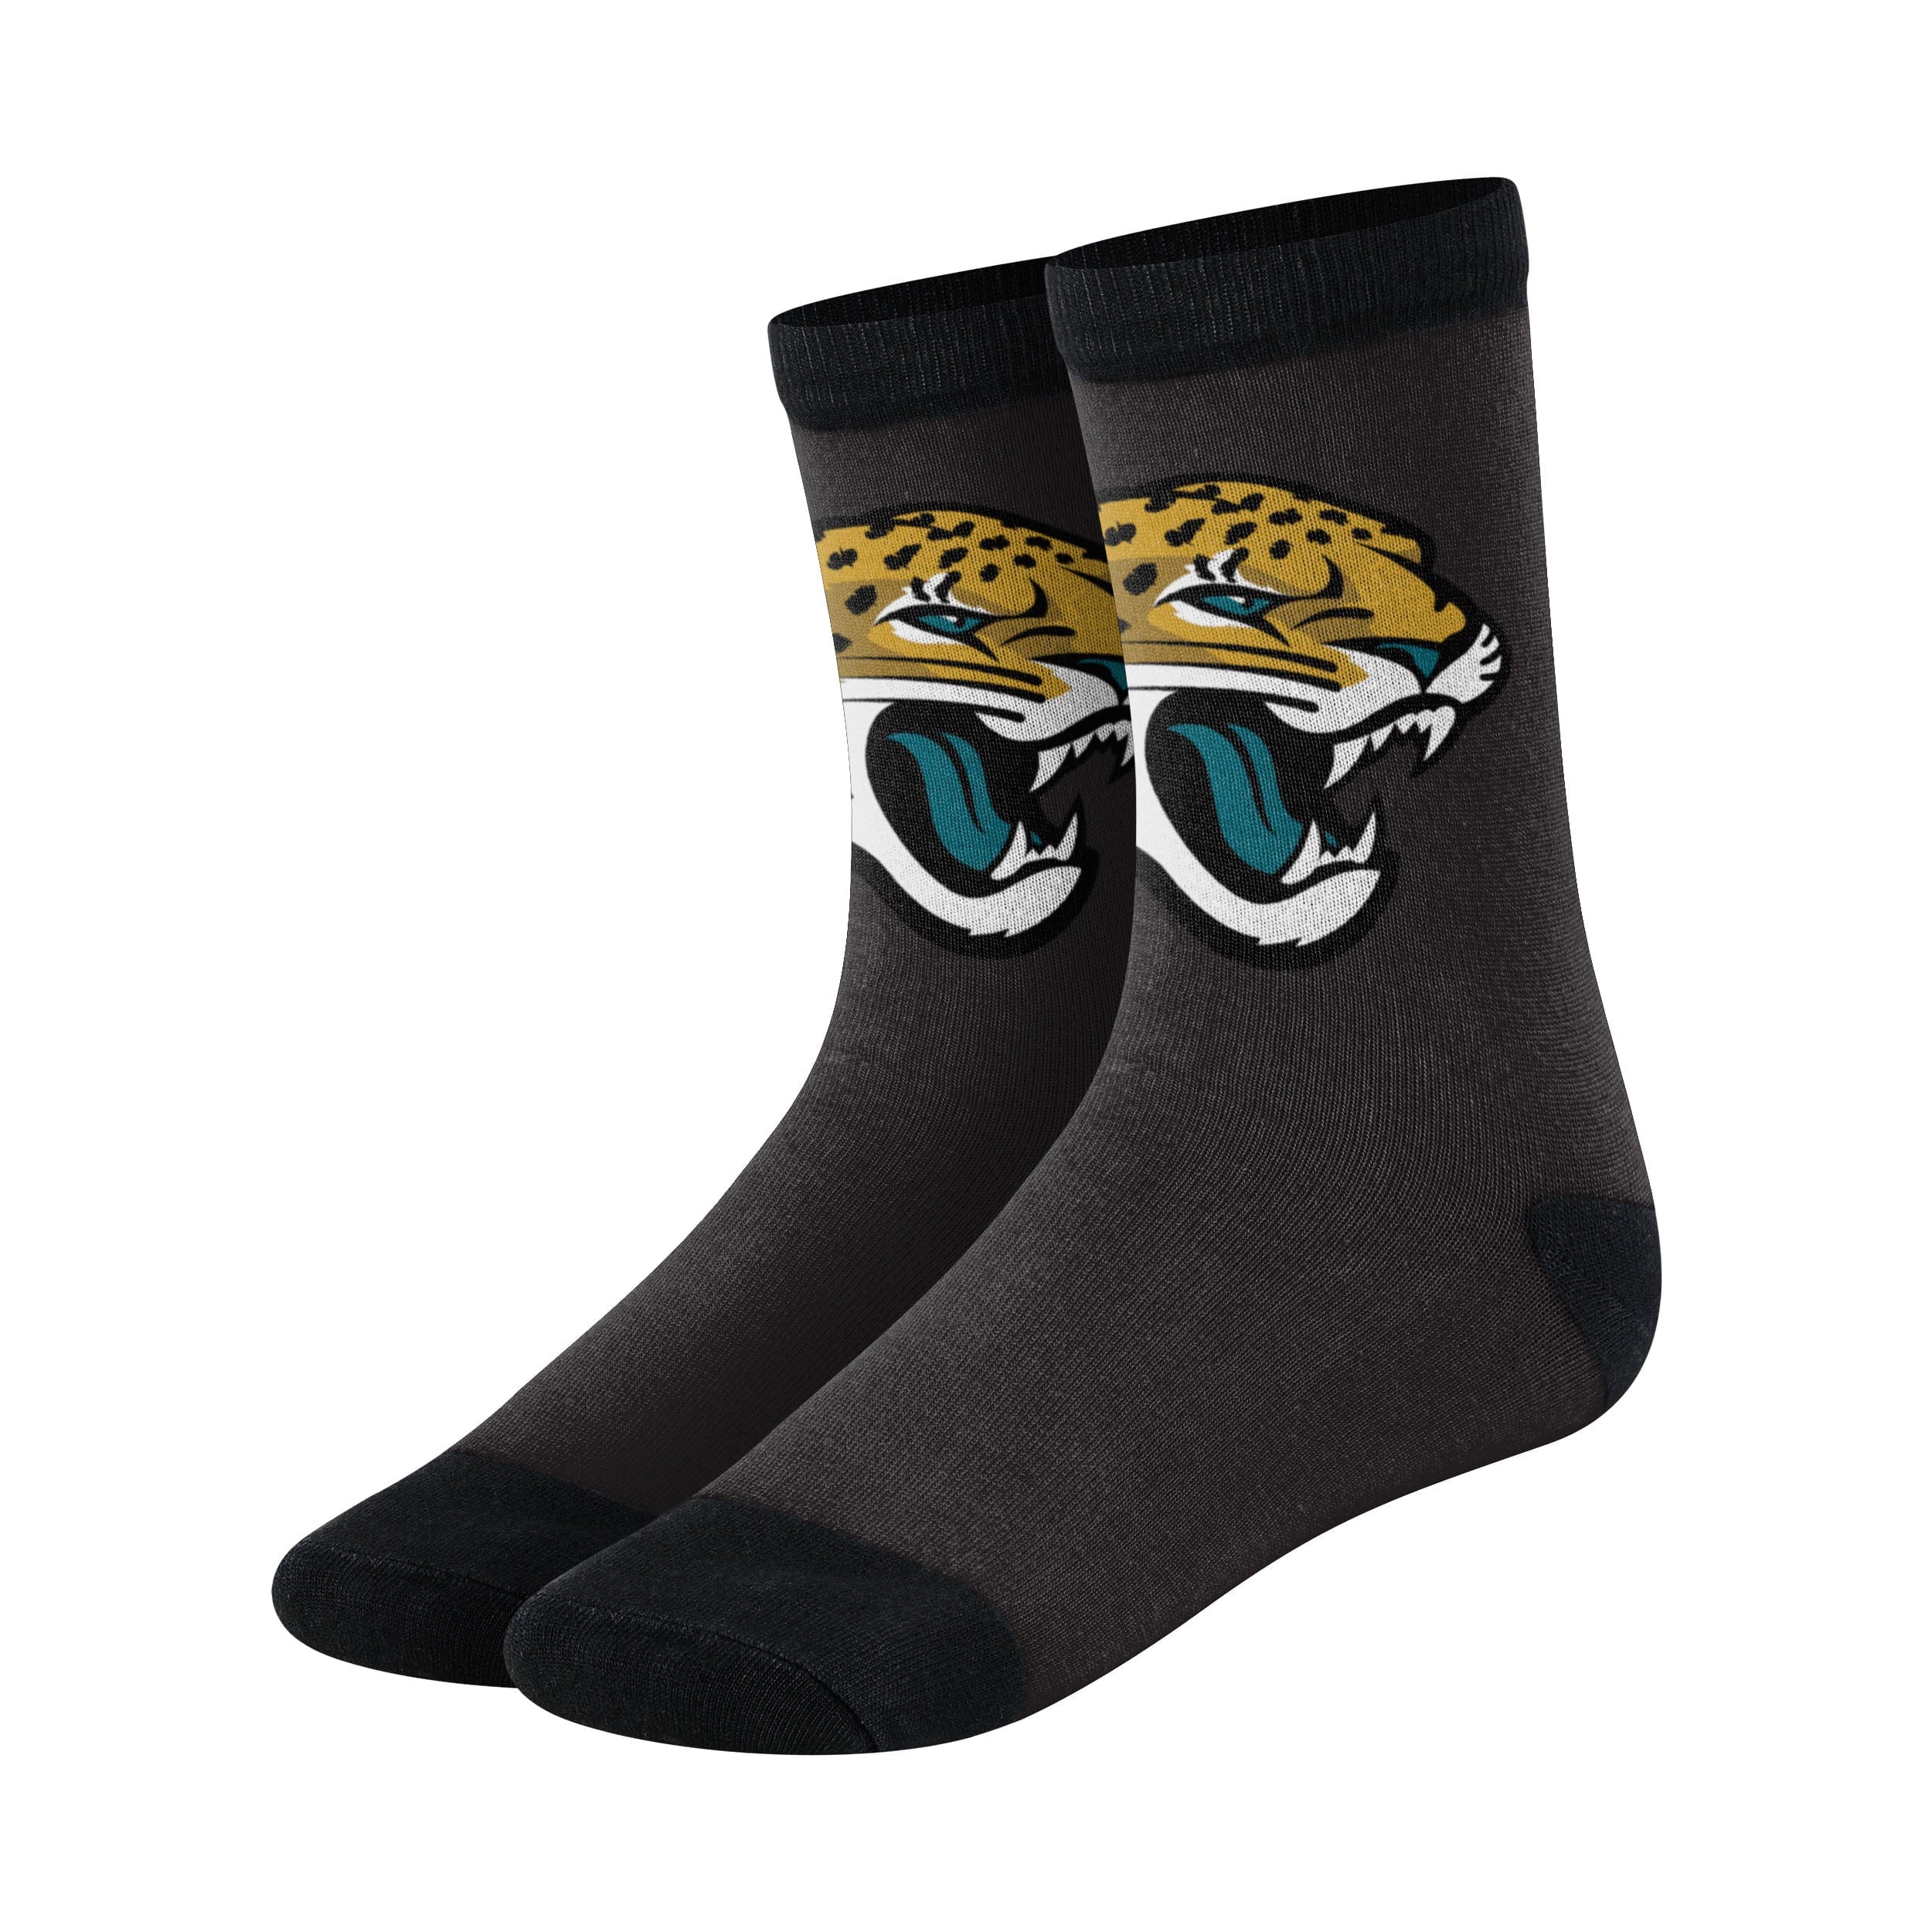 jacksonville jaguars socks